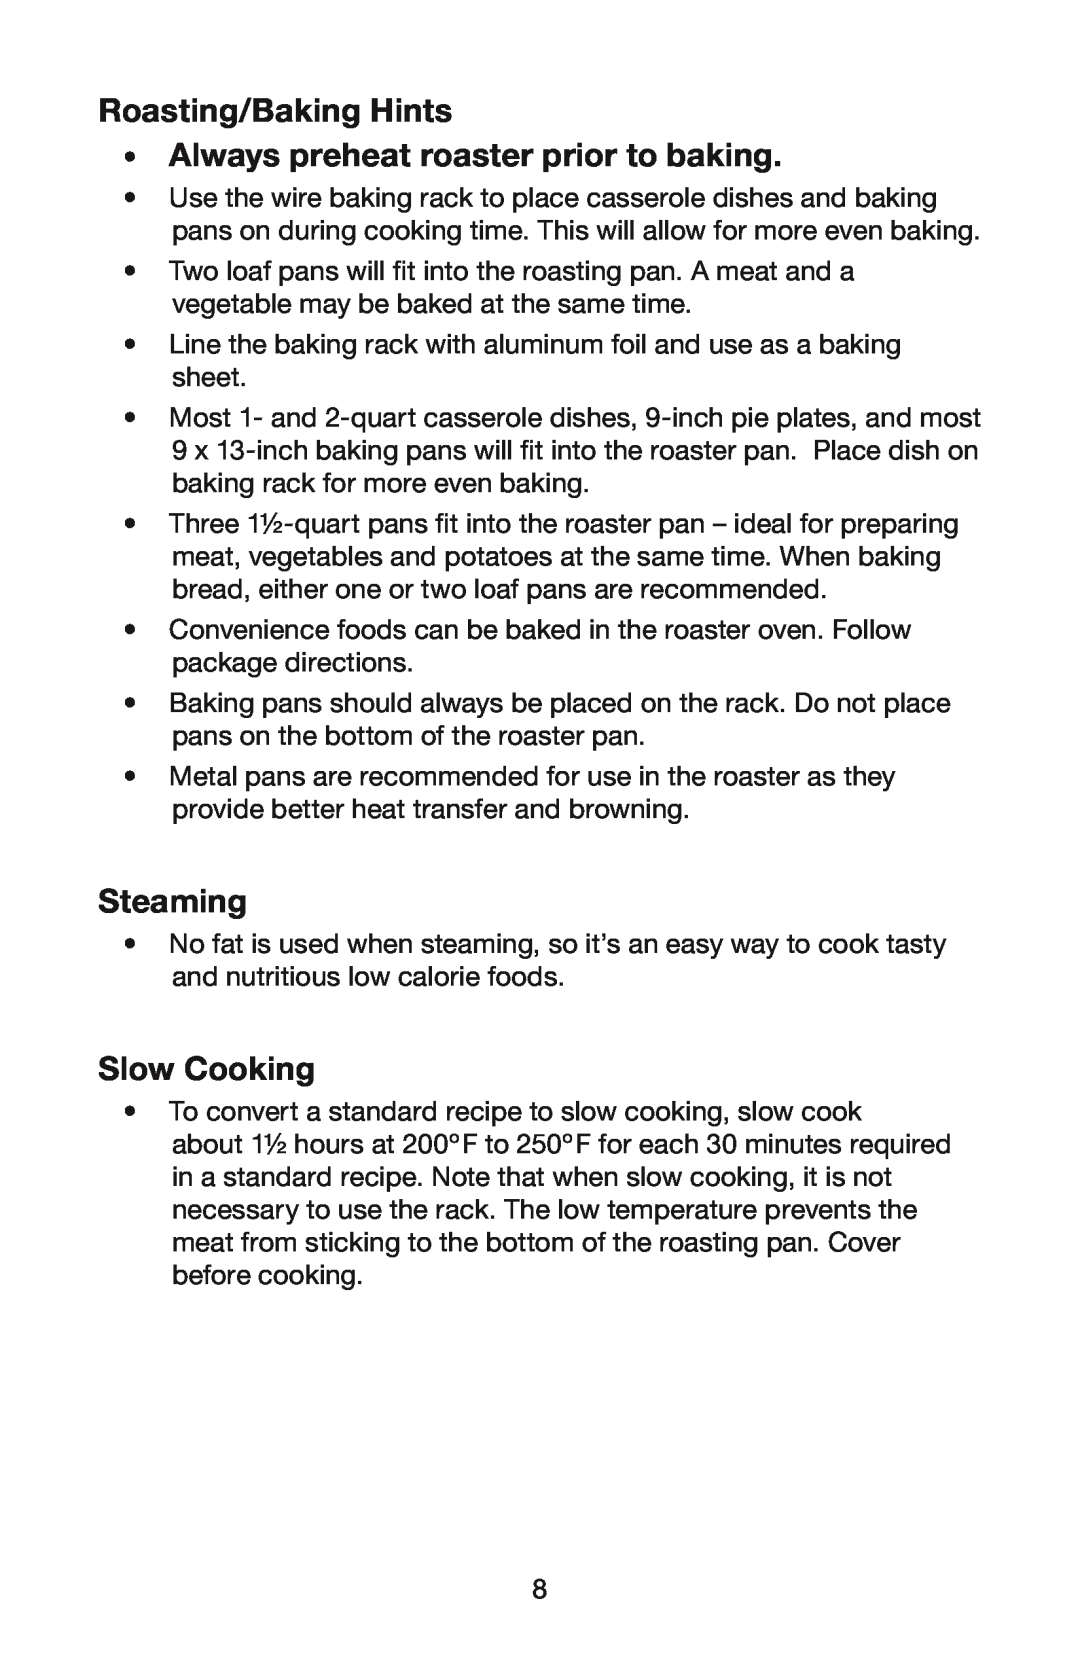 Waring RO18B manual Roasting/Baking Hints, Always preheat roaster prior to baking, Steaming, Slow Cooking 